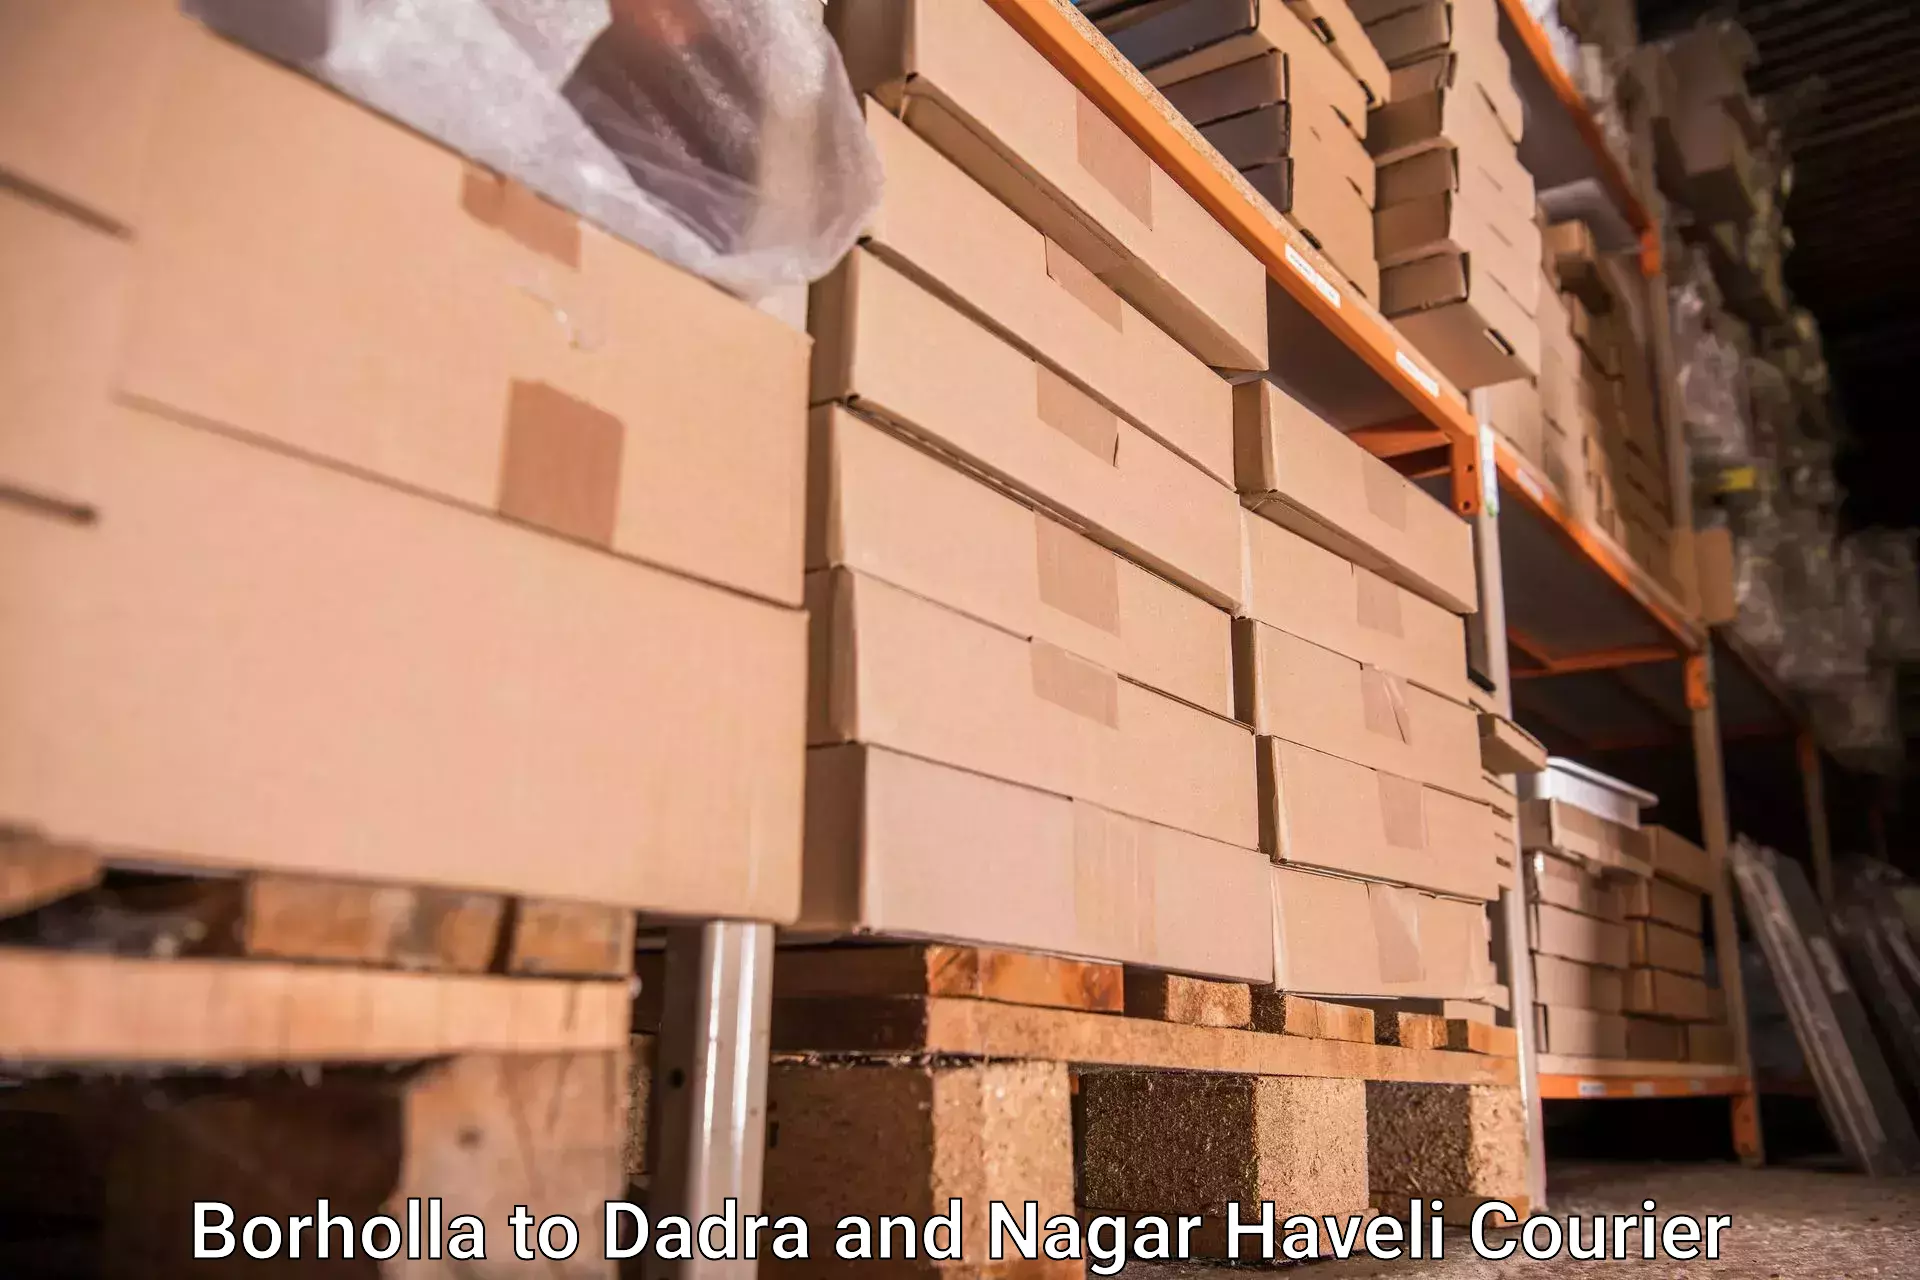 Luggage shipment tracking Borholla to Dadra and Nagar Haveli